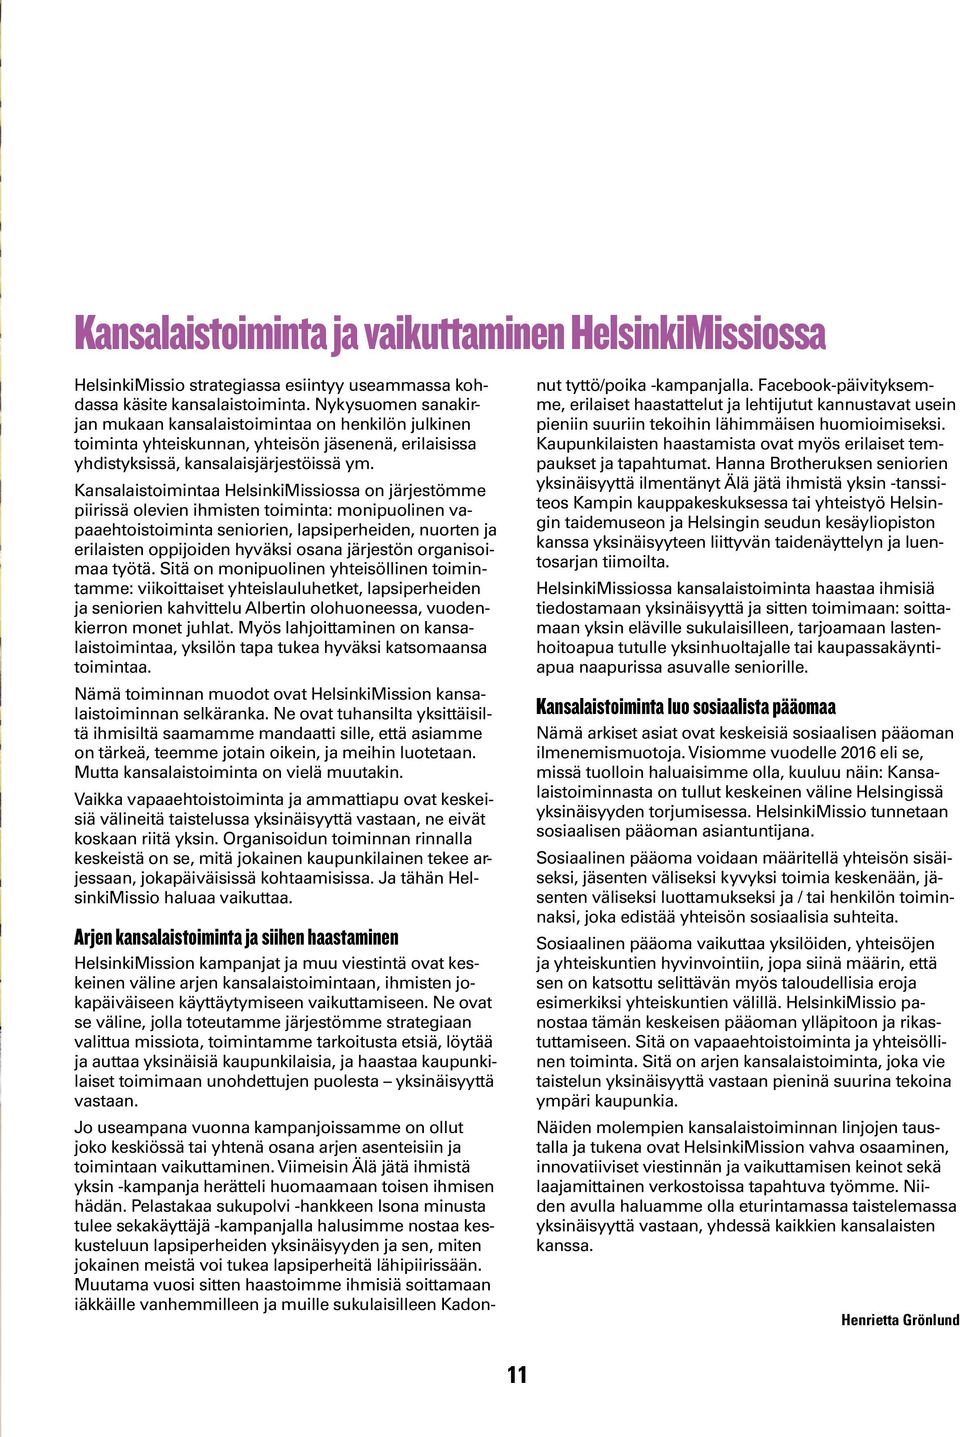 Kansalaistoimintaa HelsinkiMissiossa on järjestömme piirissä olevien ihmisten toiminta: monipuolinen vapaaehtoistoiminta seniorien, lapsiperheiden, nuorten ja erilaisten oppijoiden hyväksi osana